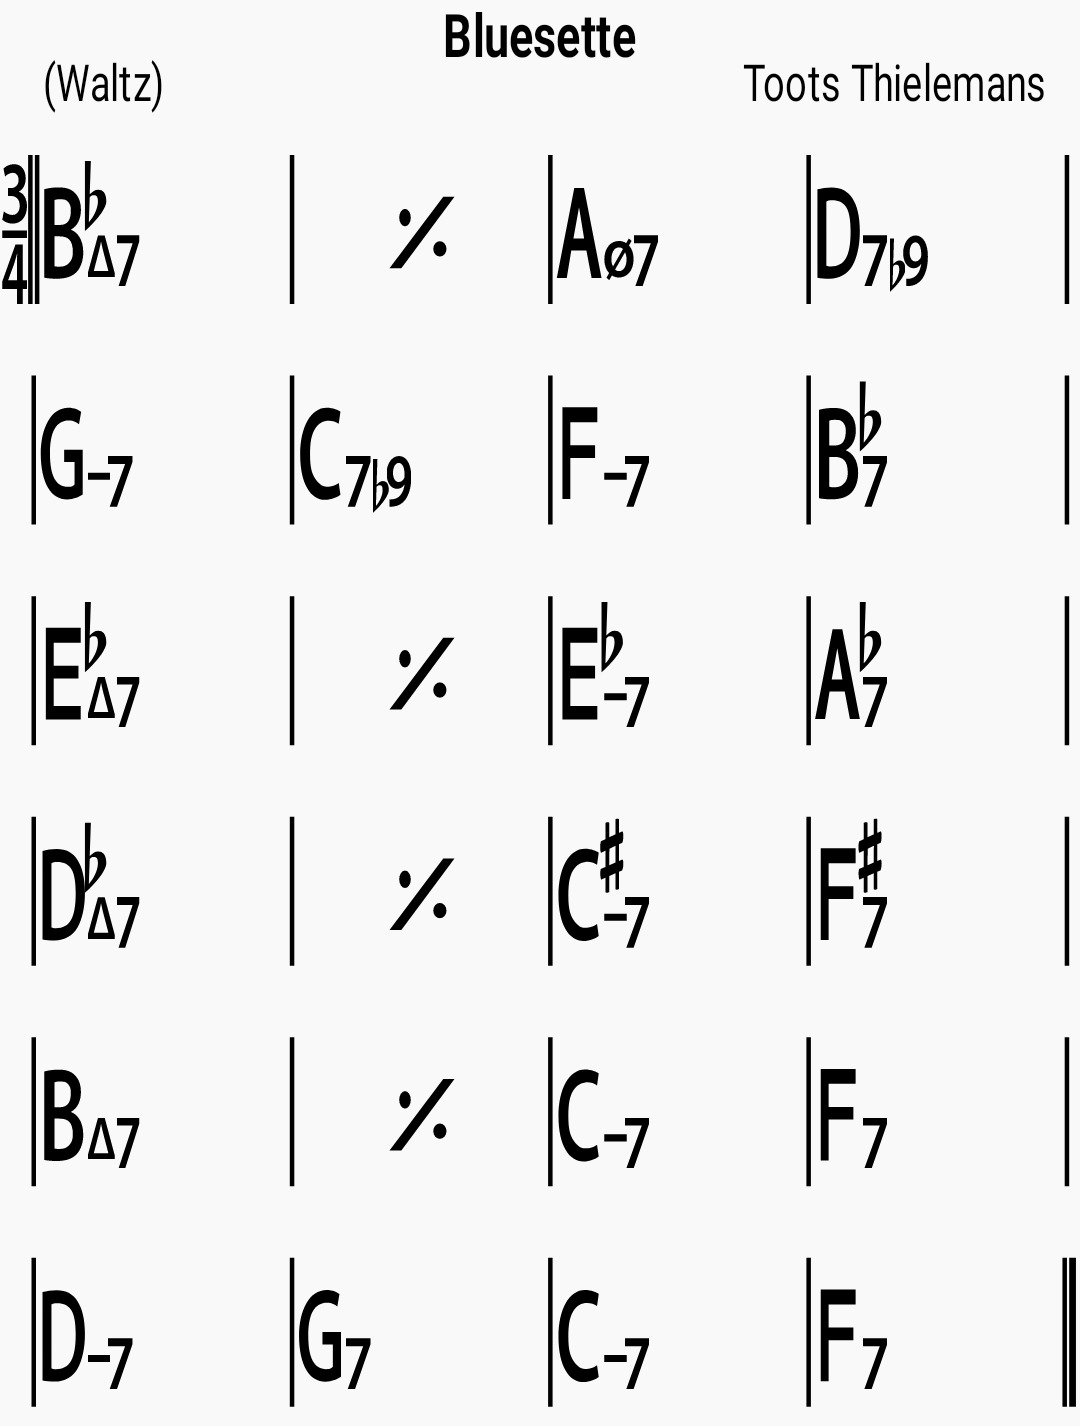 Chord chart for the jazz standard Bluesette